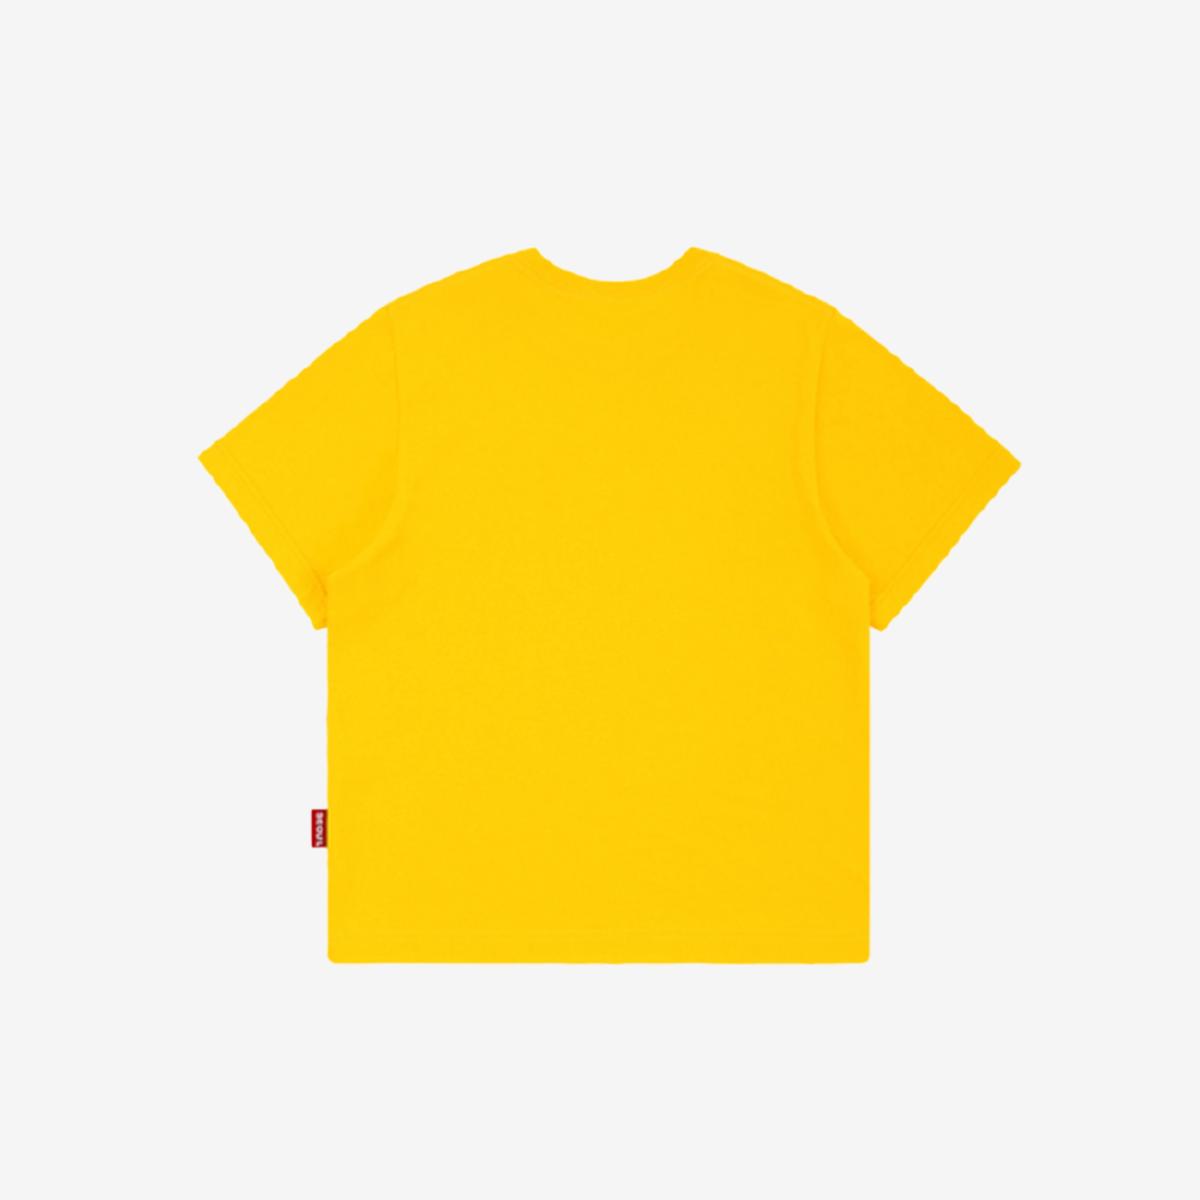 Áo phông cộc tay logo OiOi 2020 (màu vàng)